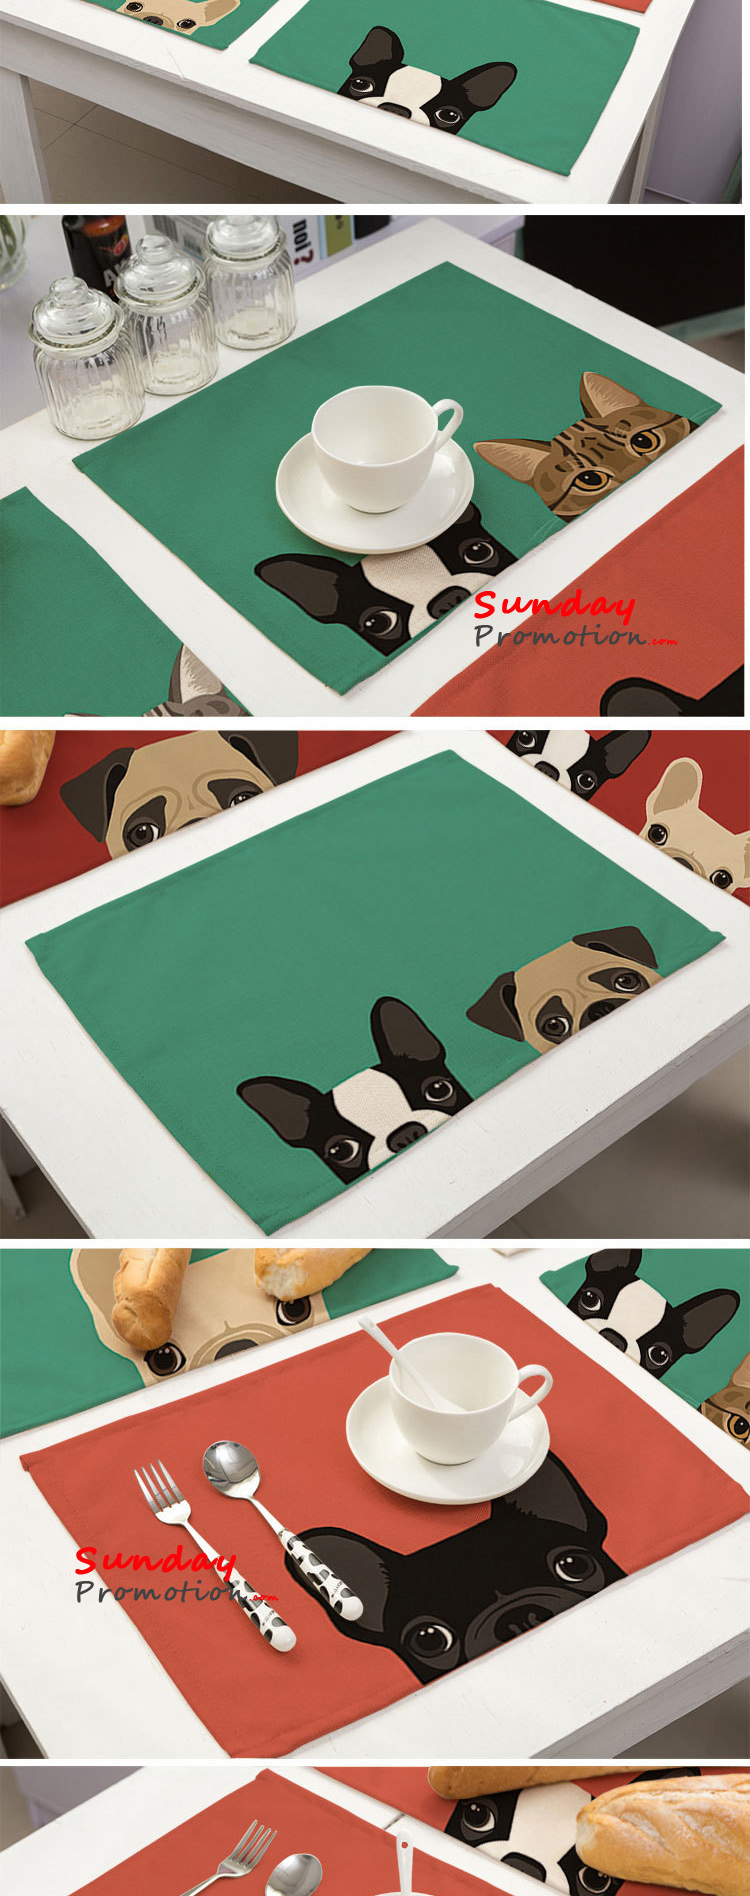 Custom Promotional Mats Printing Bulk Linen Placemats Set Dog Cat